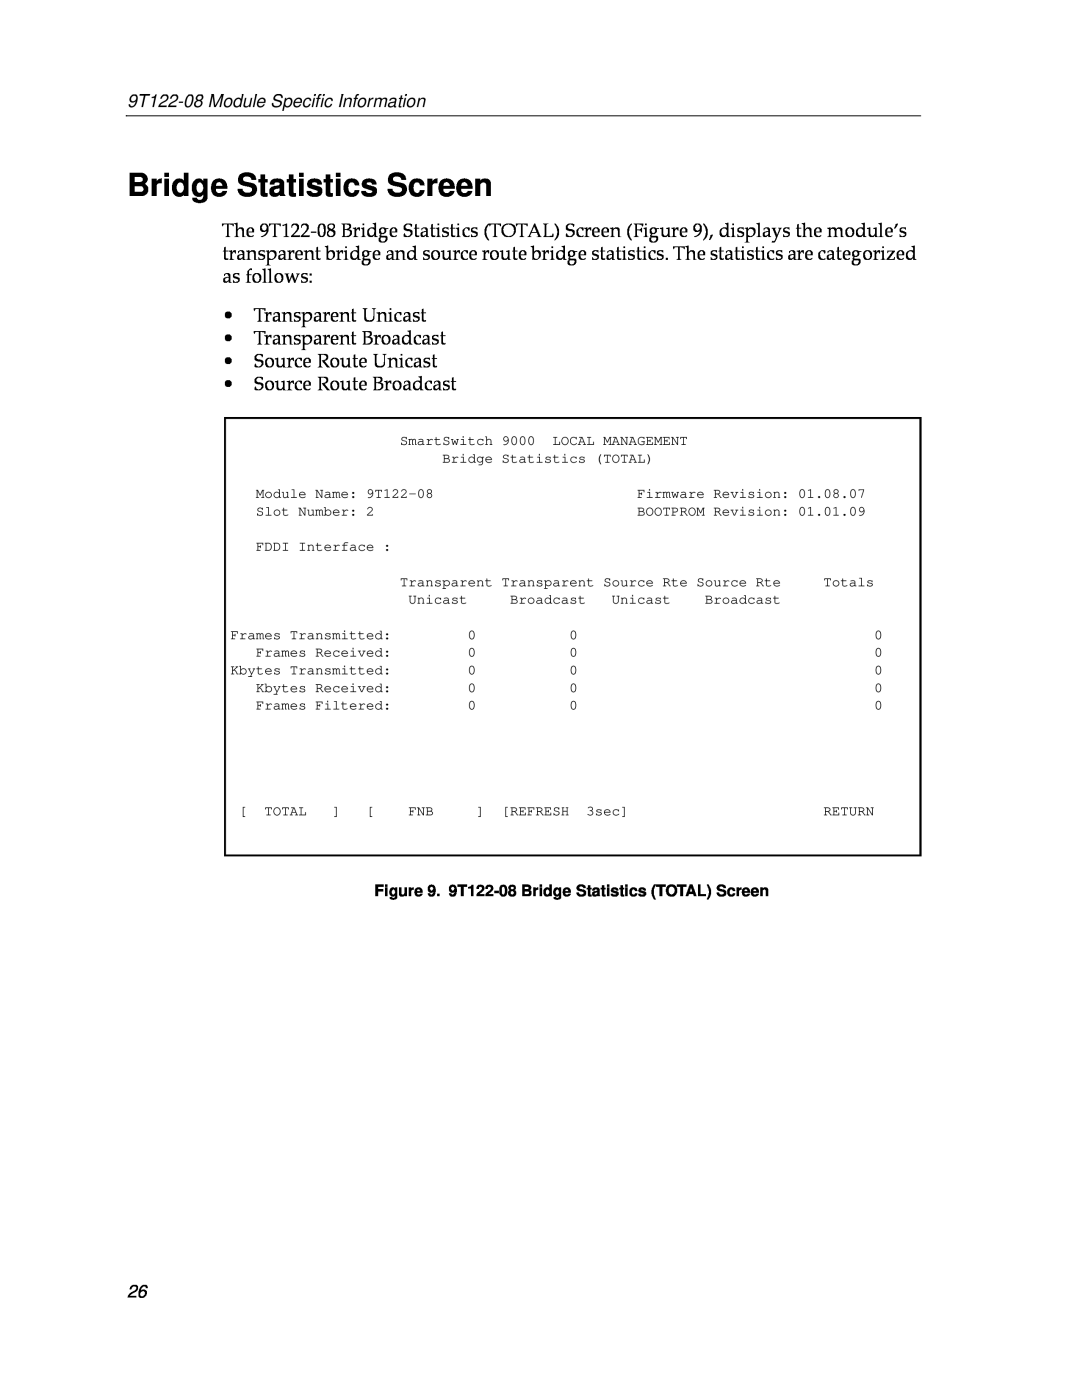 Cabletron Systems 9T122-08 appendix Bridge Statistics Screen 